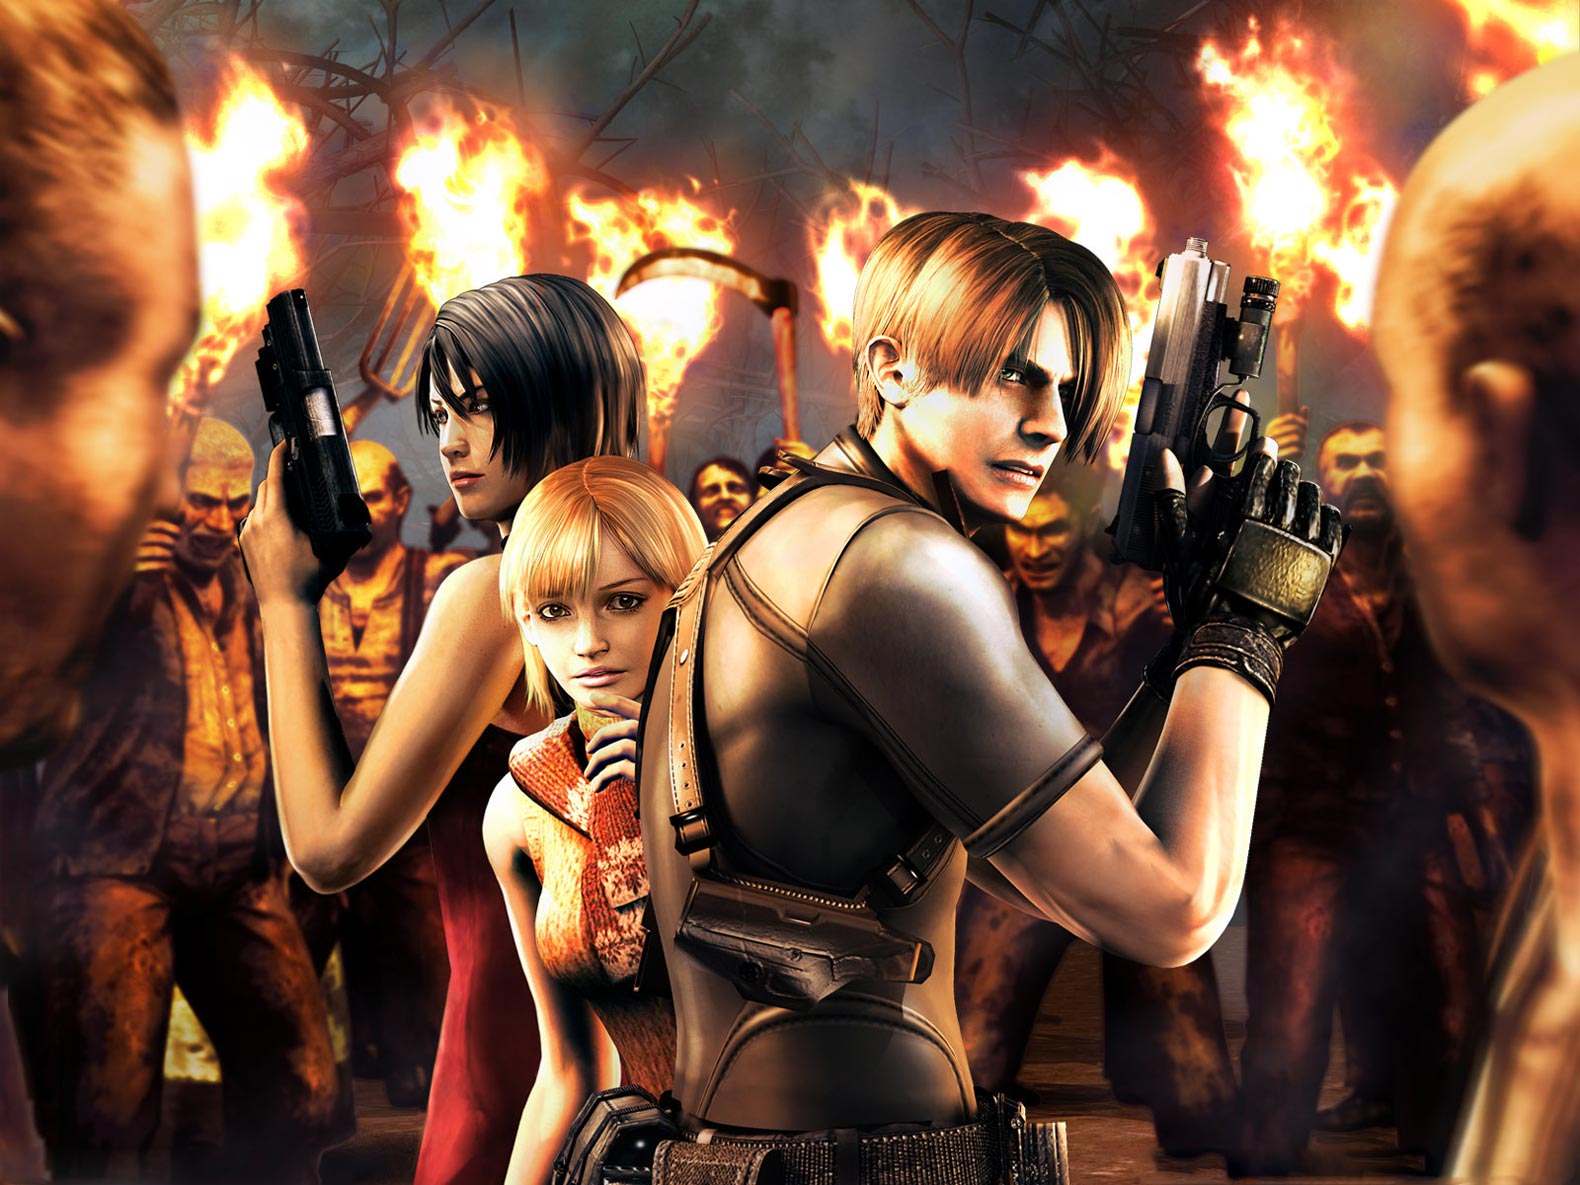 Resident Evil Wallpapers Hd Wallpaper - Resident Evil 4 Cover Dvd - HD Wallpaper 